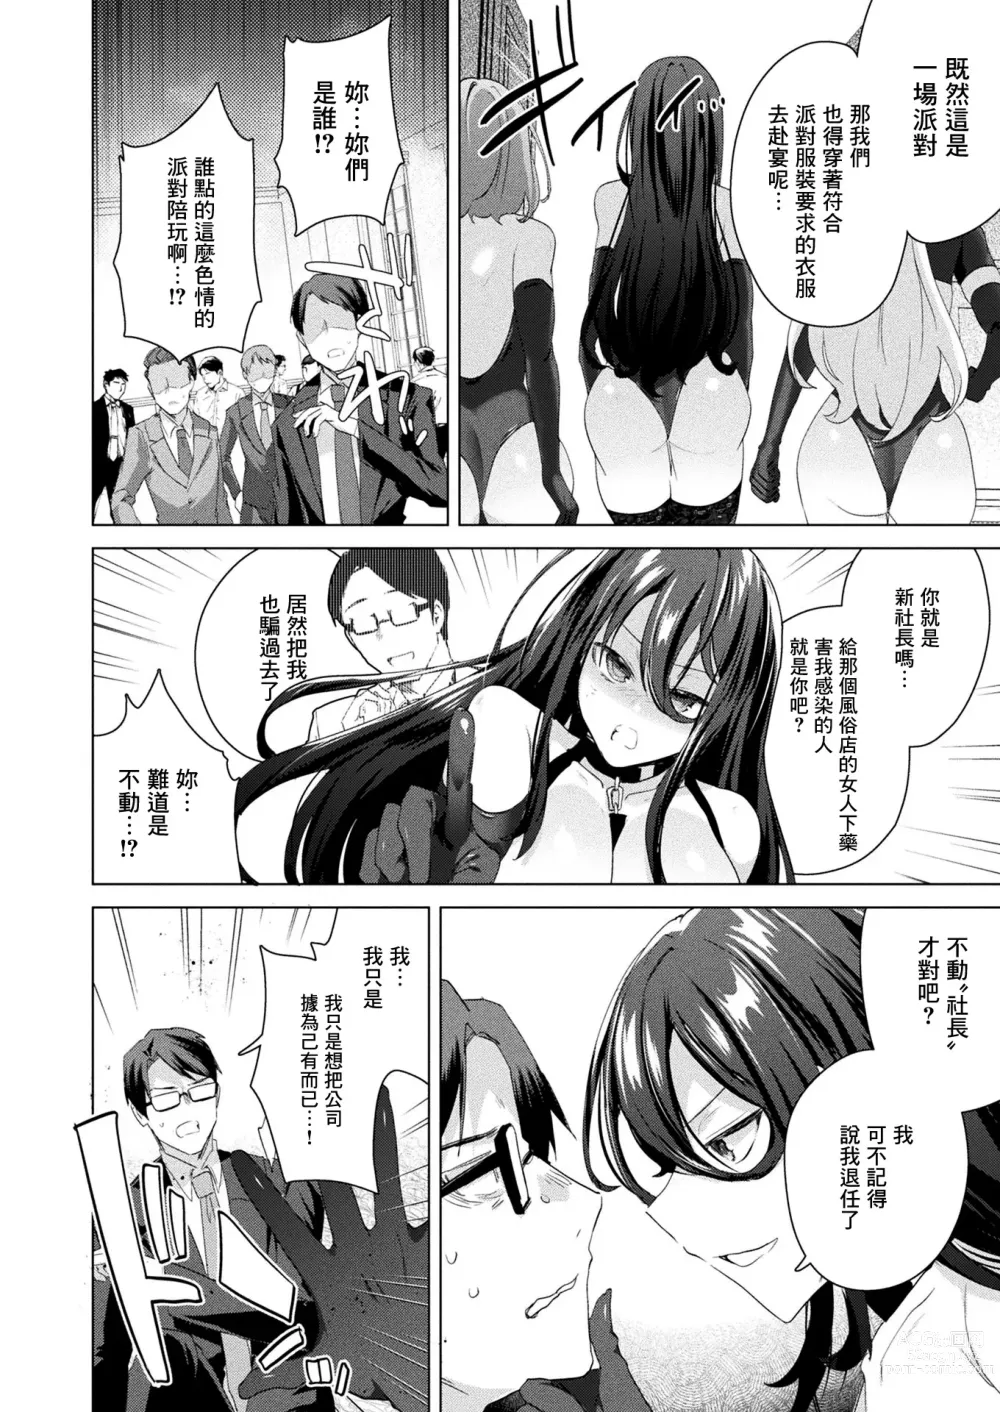 Page 3 of manga TS President Saishuuwa